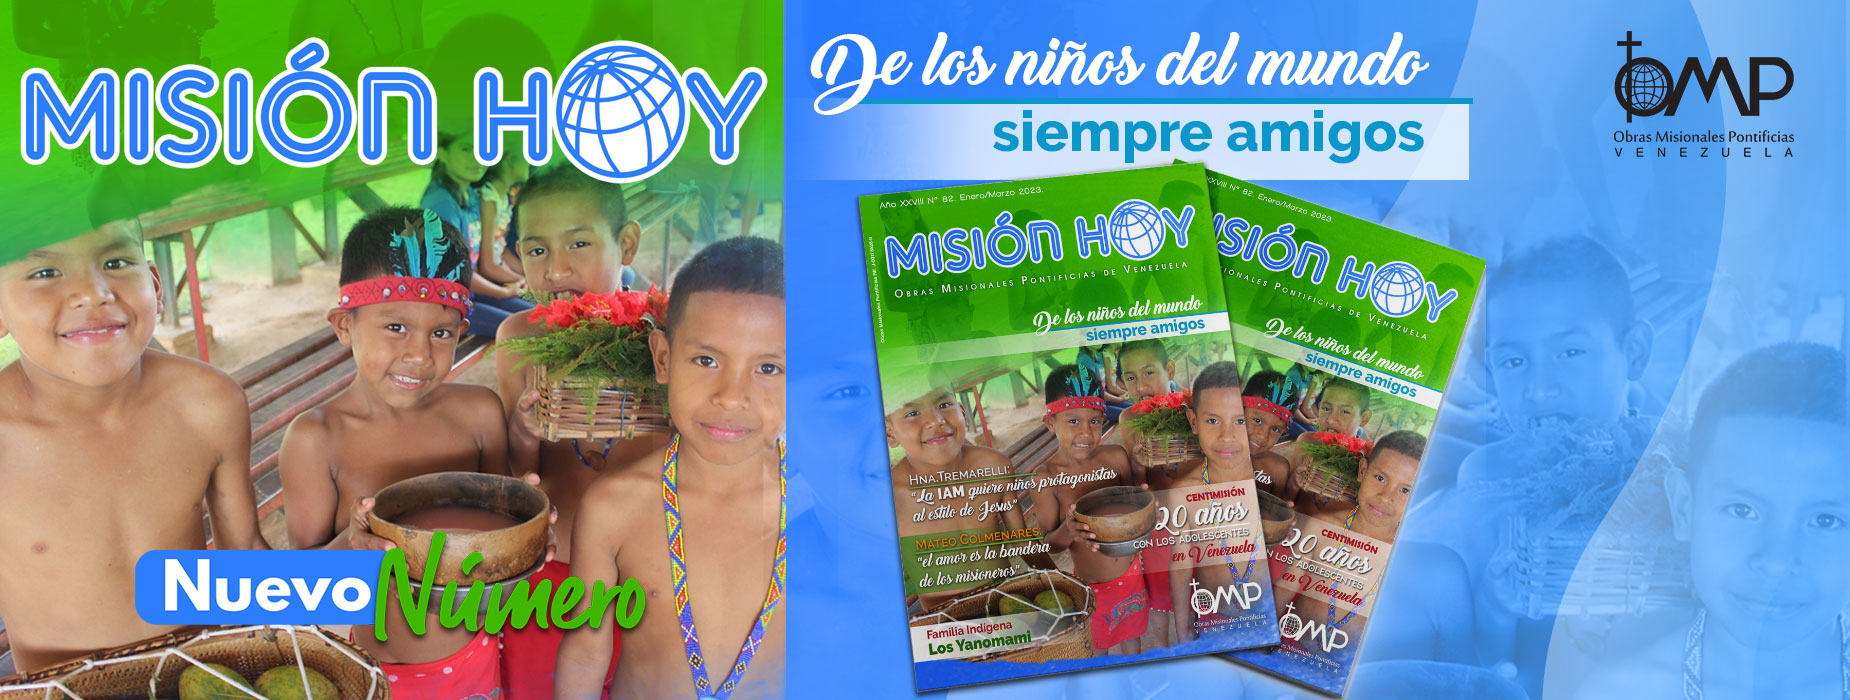 Revista Misión Hoy No. 82